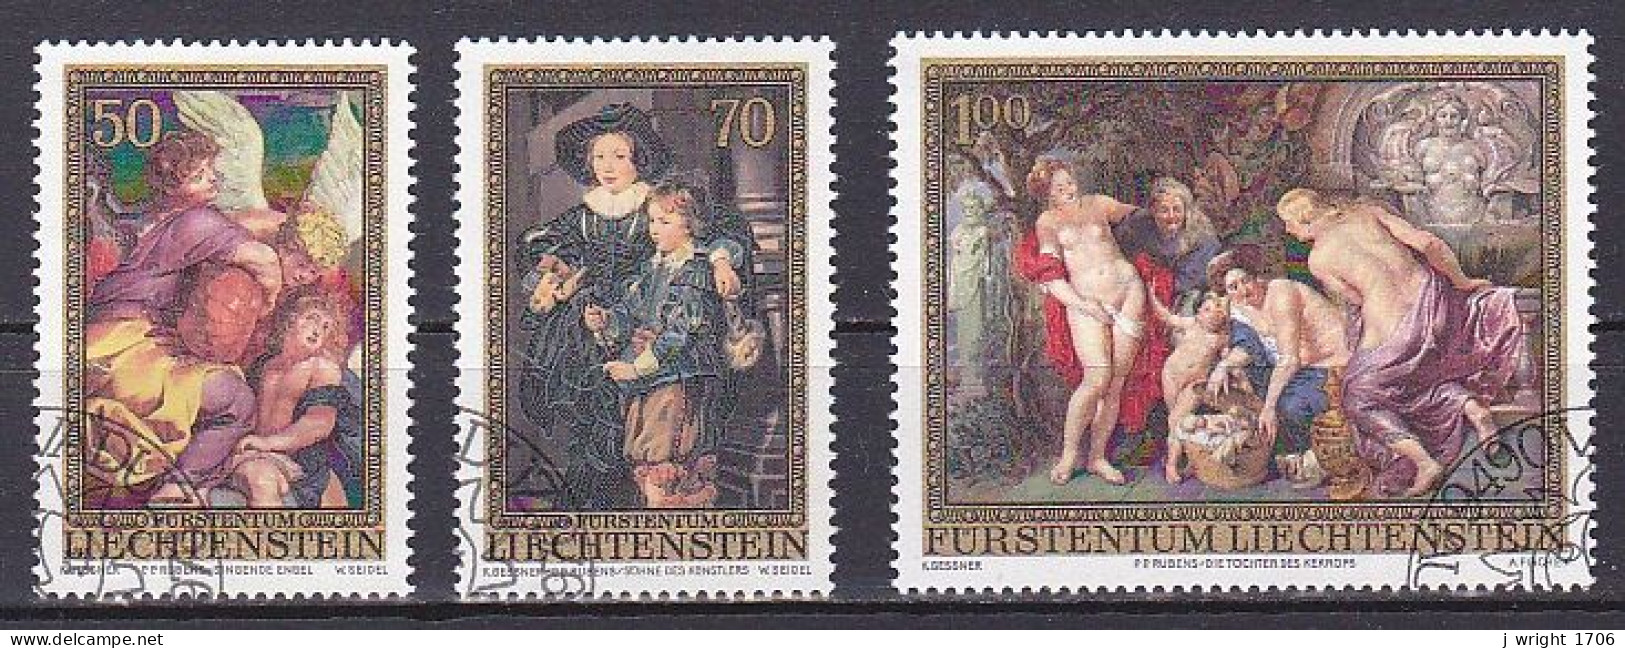 Liechtenstein, 1976, Peter Paul Rubens, Set, CTO - Usados